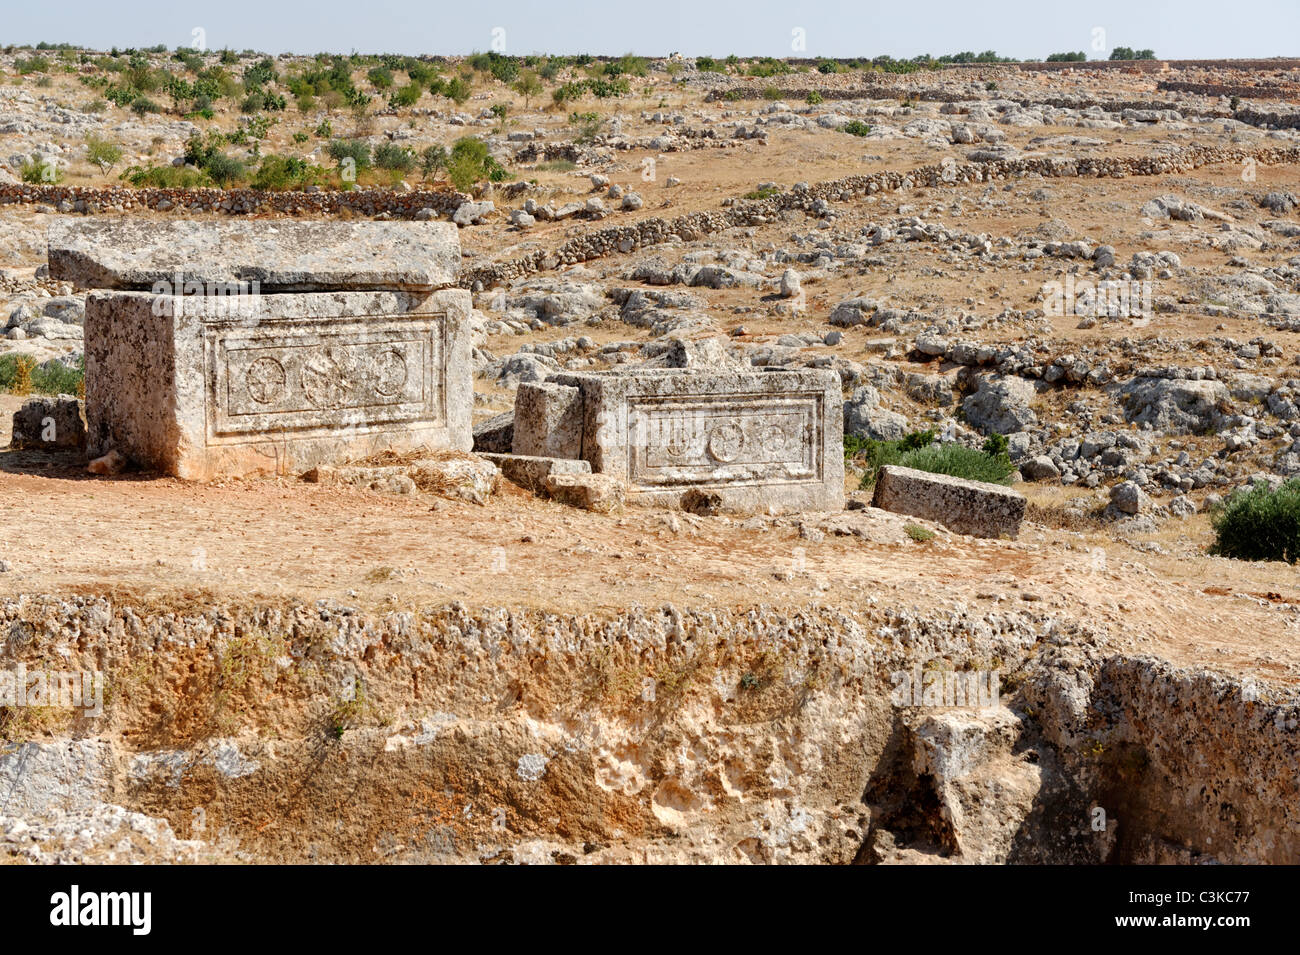 Sarcófagos bizantinas abandonadas están dispersas alrededor de la necrópolis de la ciudad muerta de Serjilla en el noroeste de Siria. Foto de stock